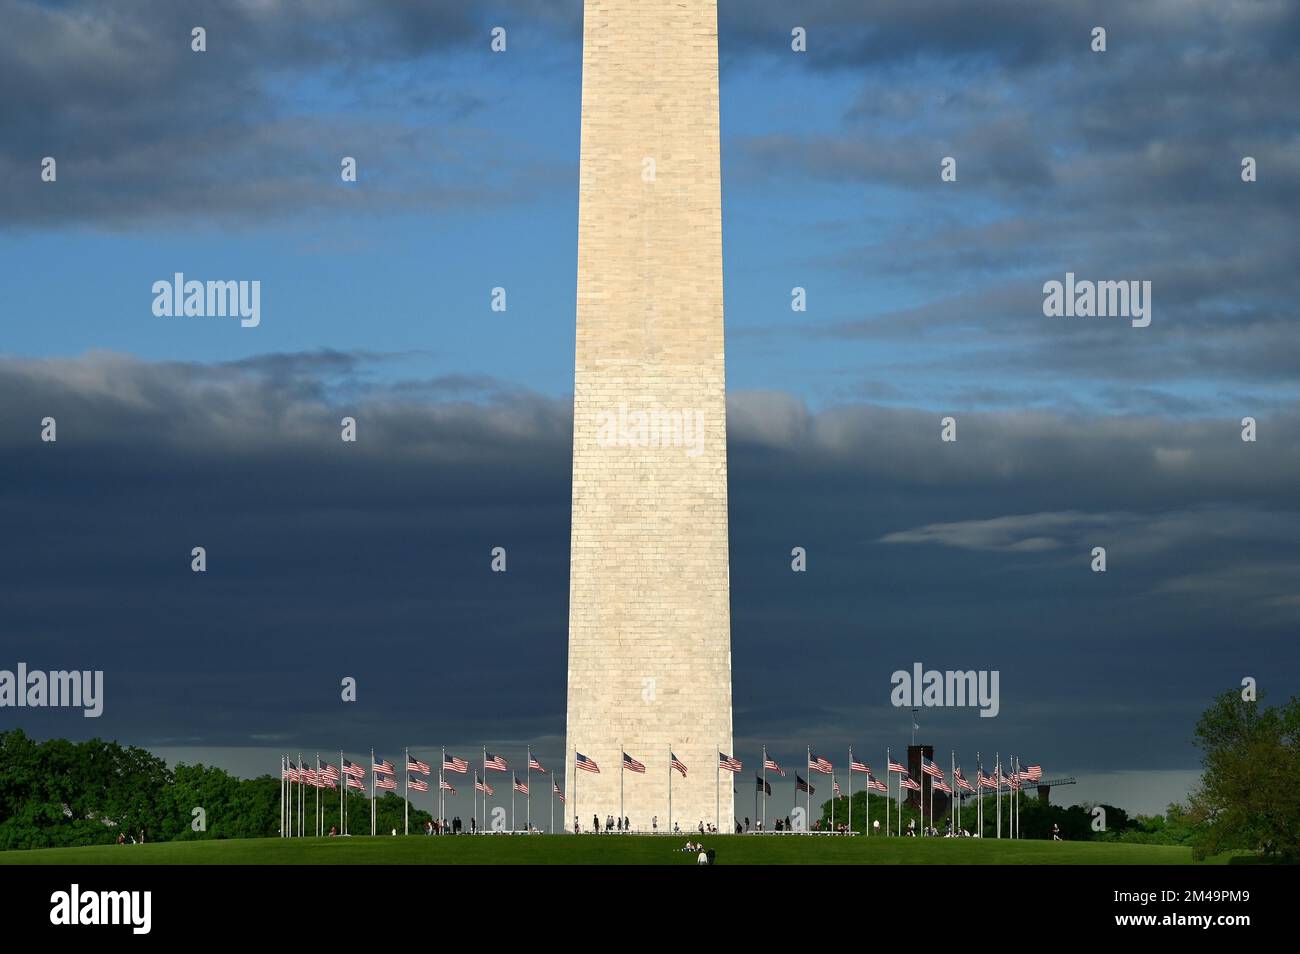 Washington Monument on the National Mall, Washington DC, United States of America Stock Photo